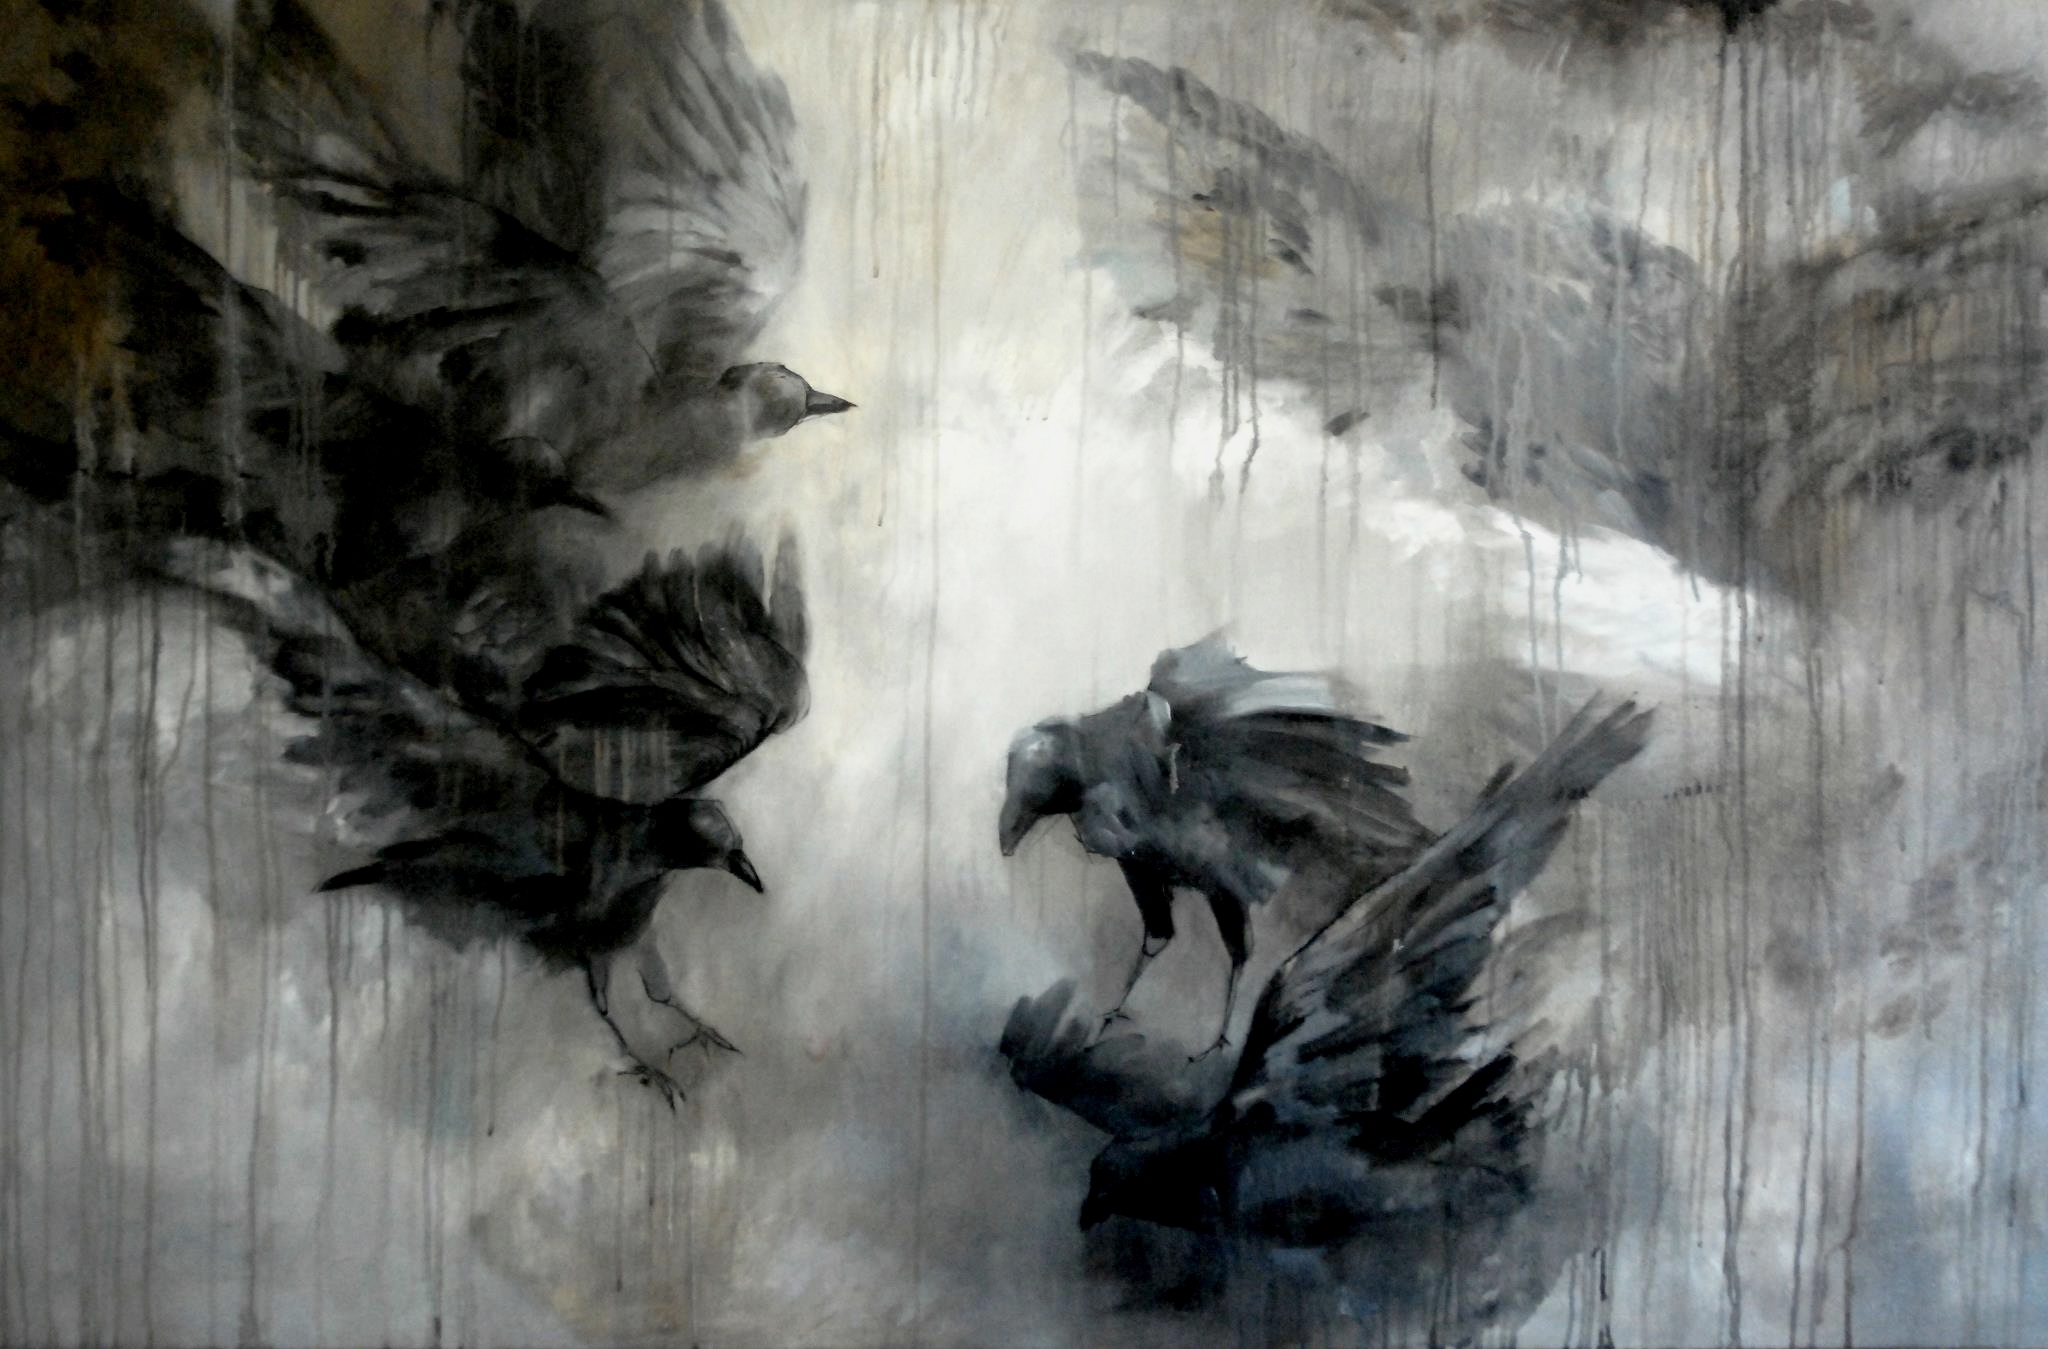 Metamorphoses by artist Saskia Ozols